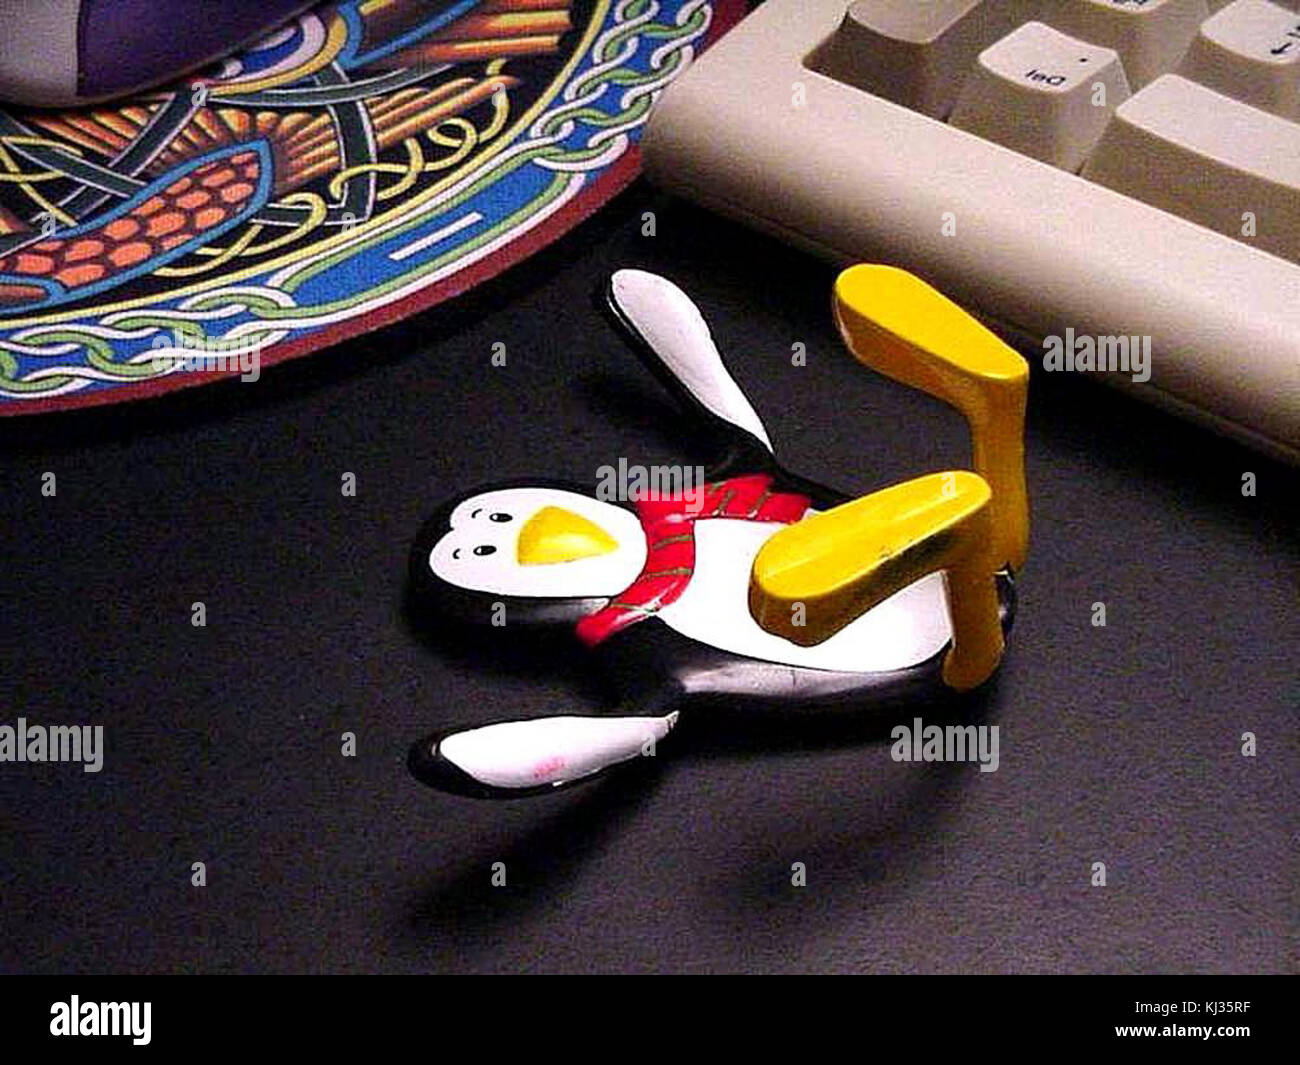 Gumby penguin toy Stock Photo